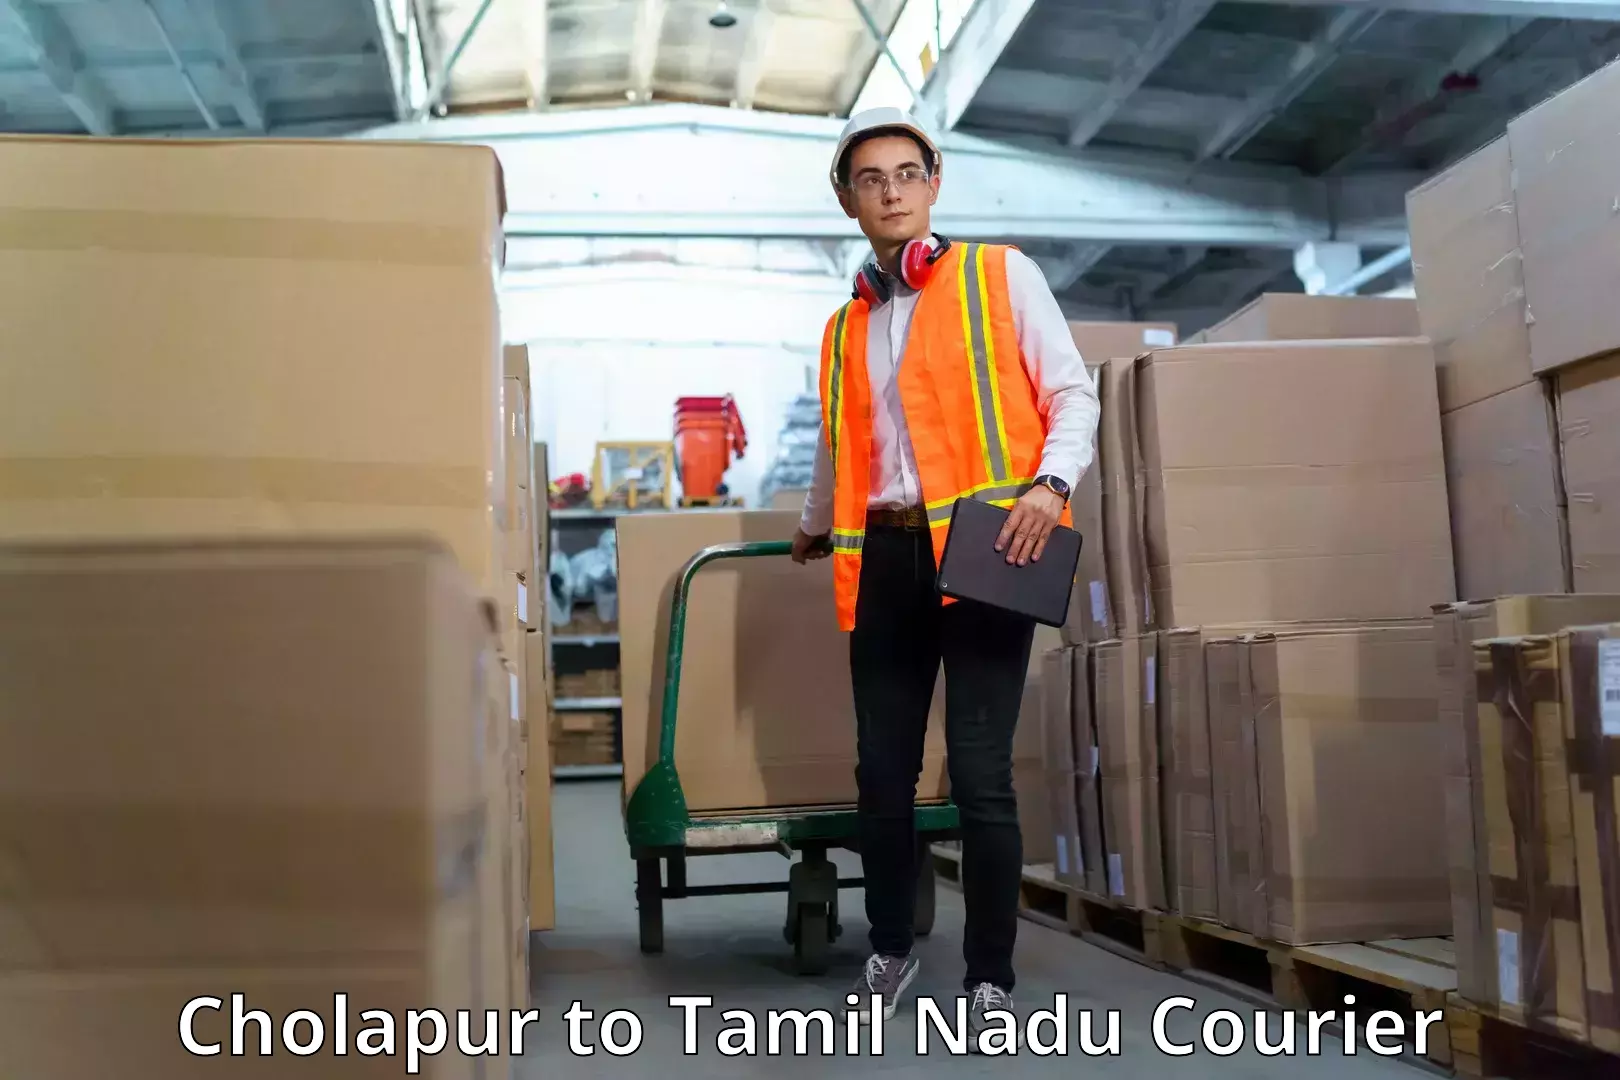 Courier service innovation Cholapur to Tamil Nadu